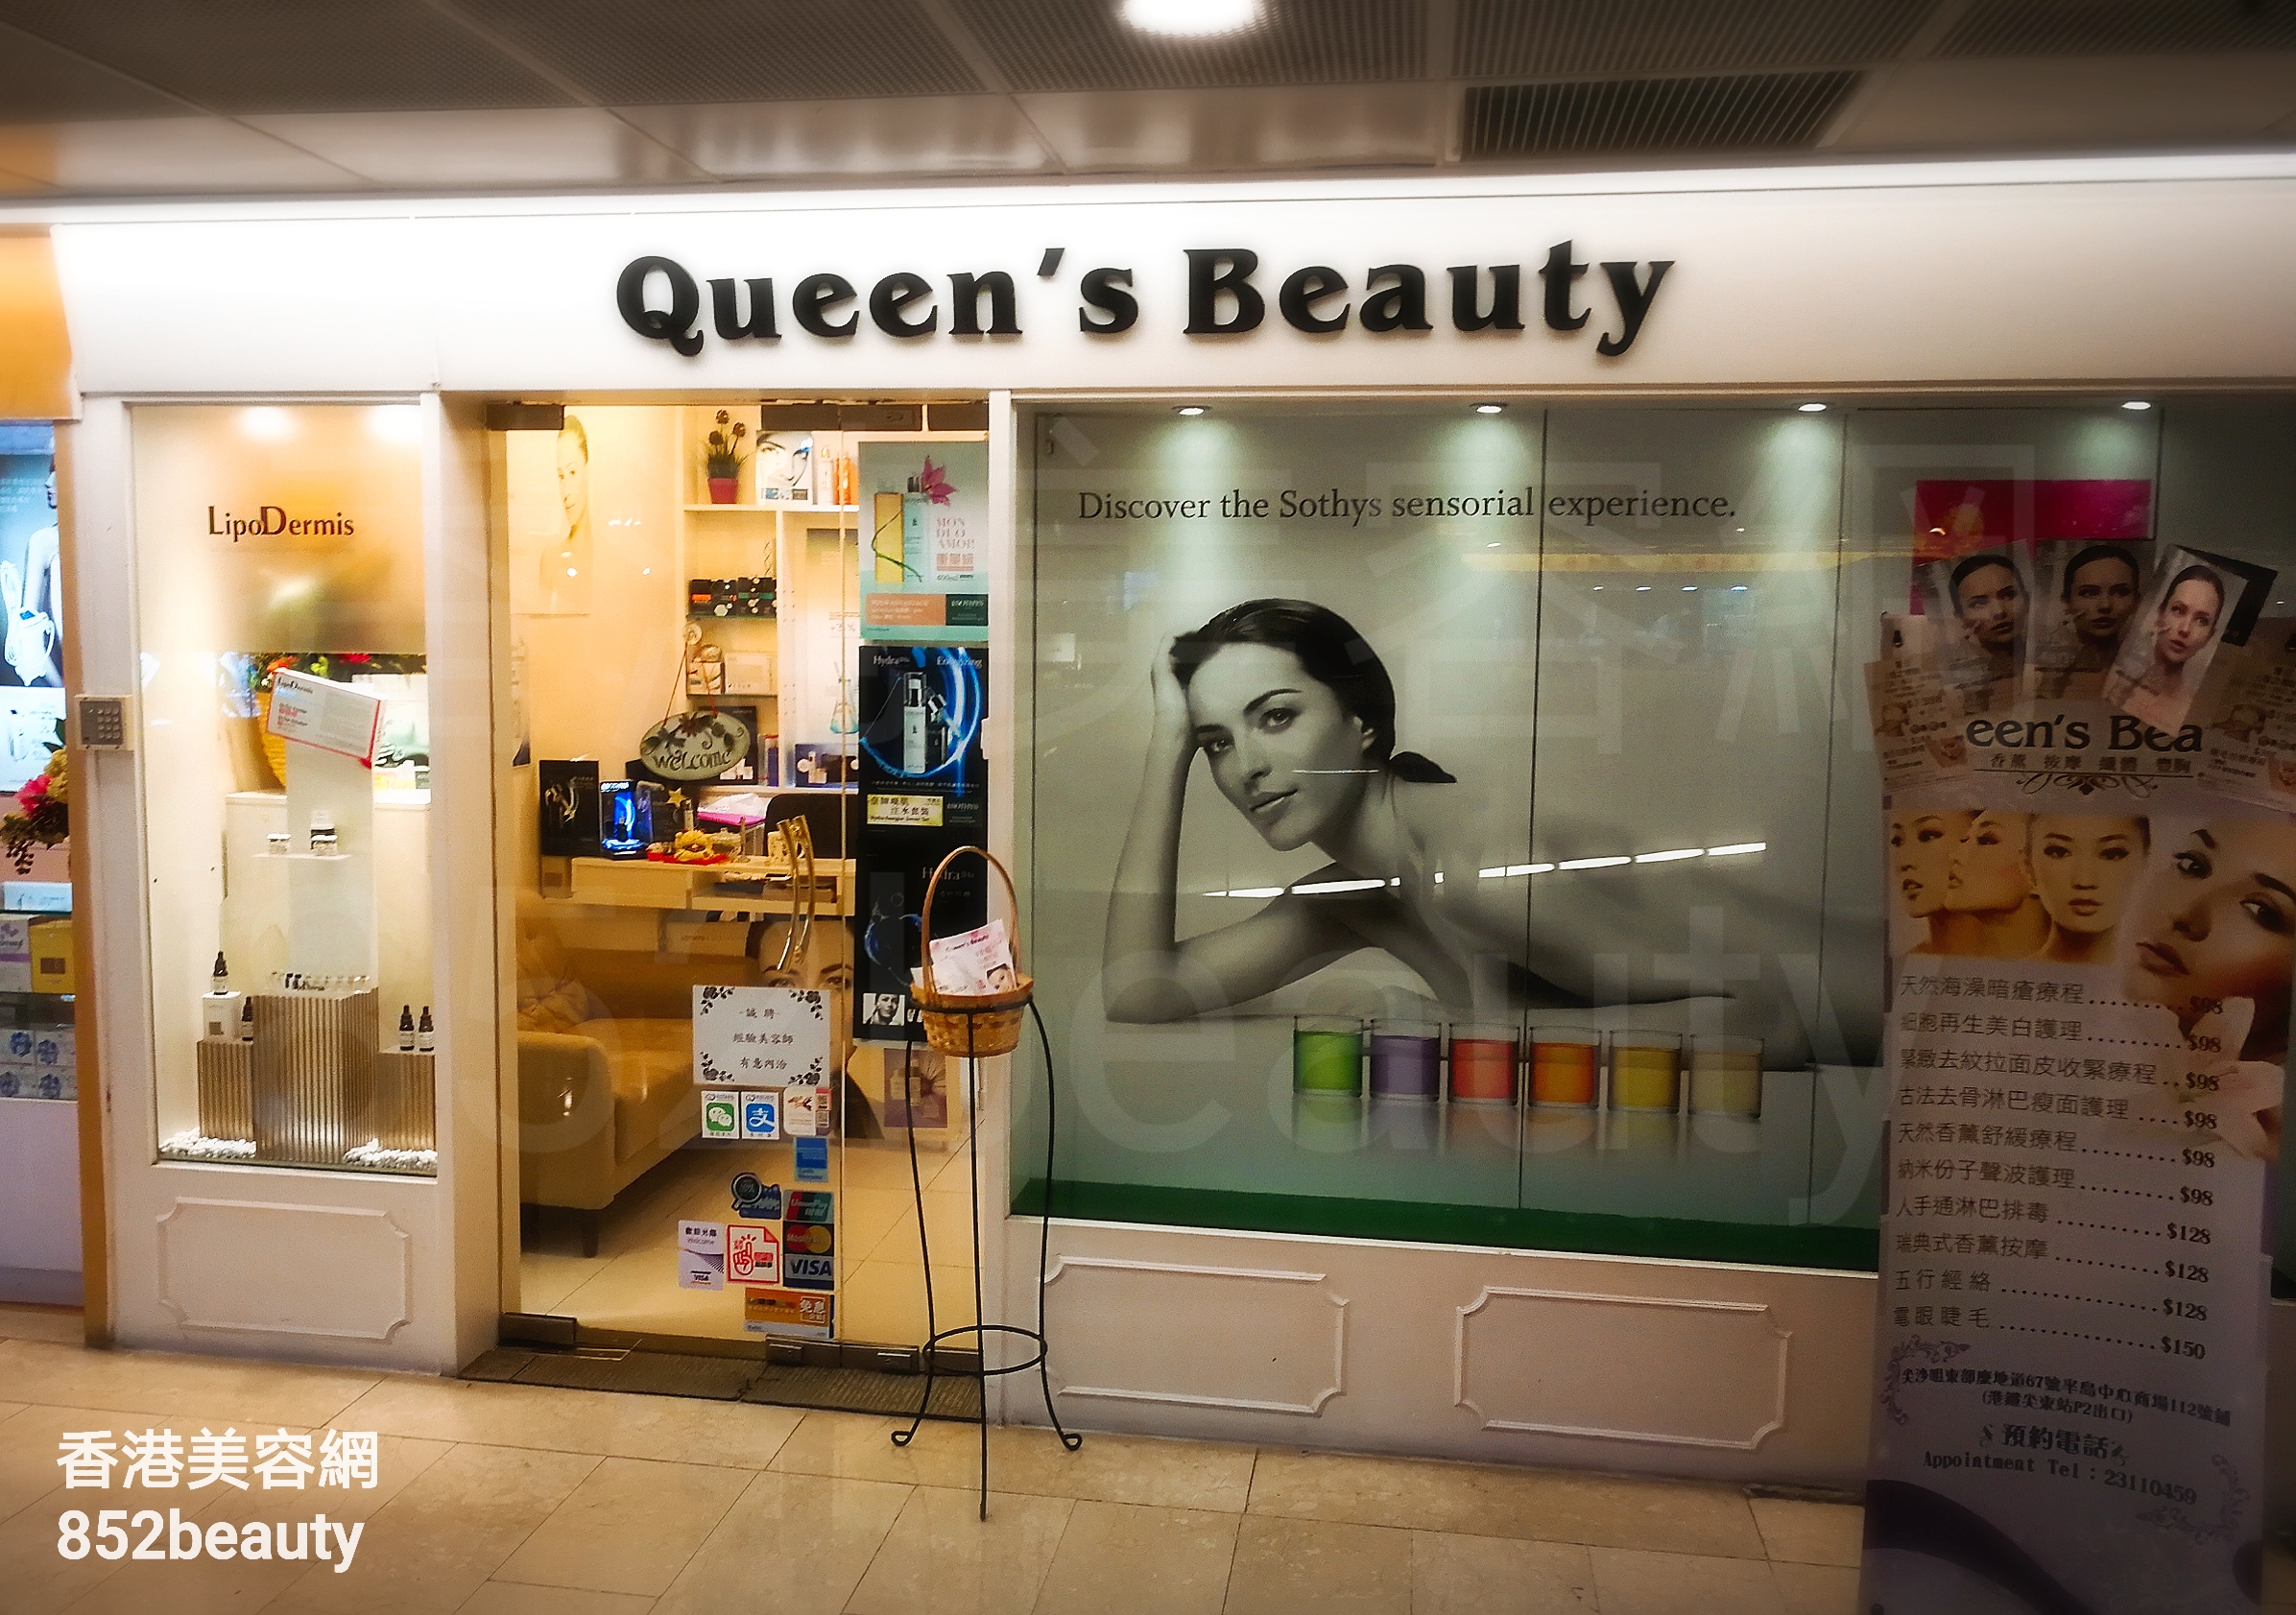 Facial Care: Queen's Beauty